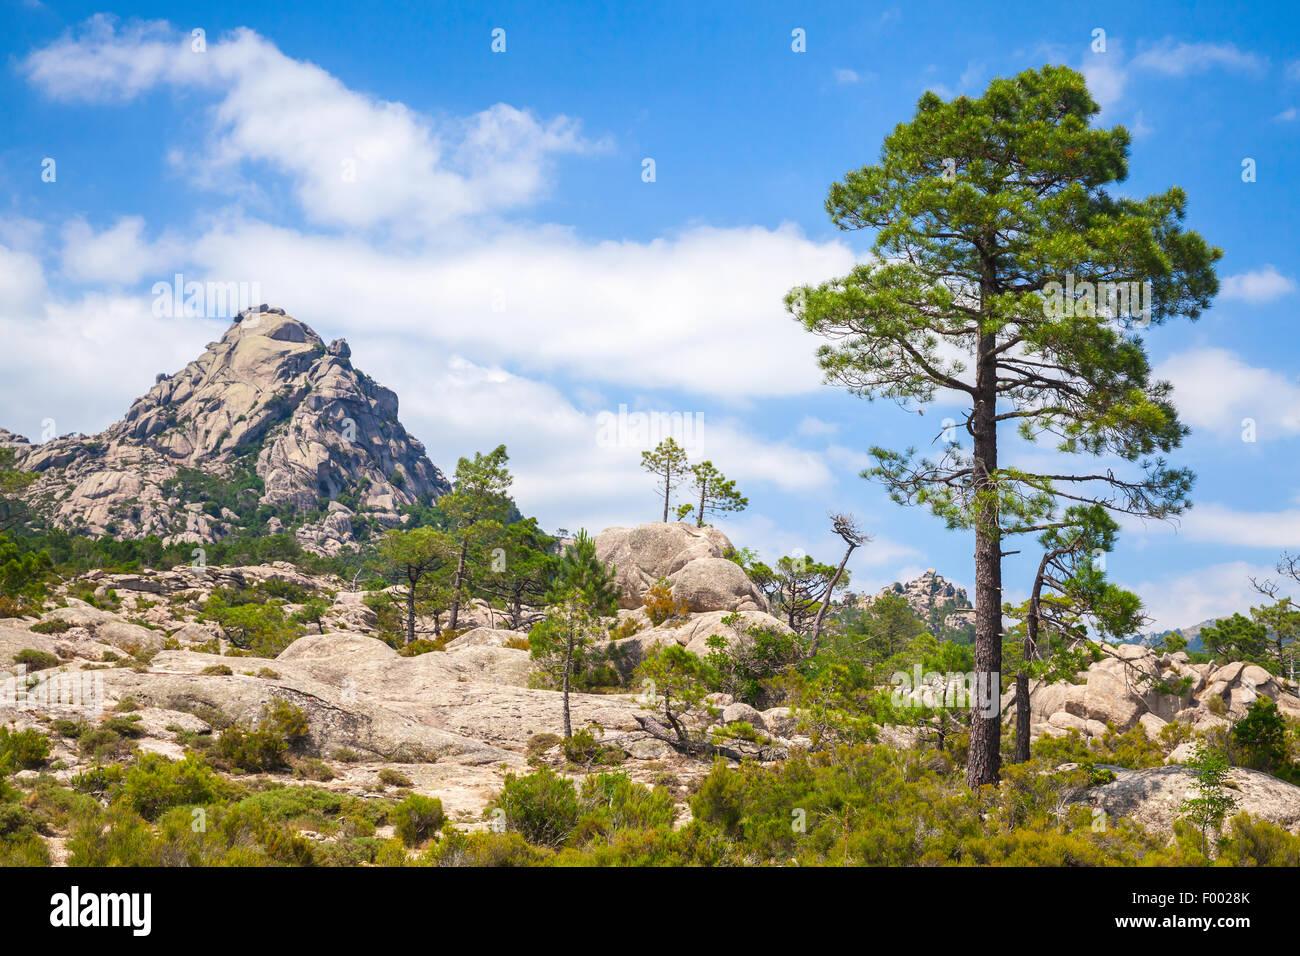 Nature de l'île de Corse, paysage de montagne avec pine tree sous blue cloudy sky Banque D'Images